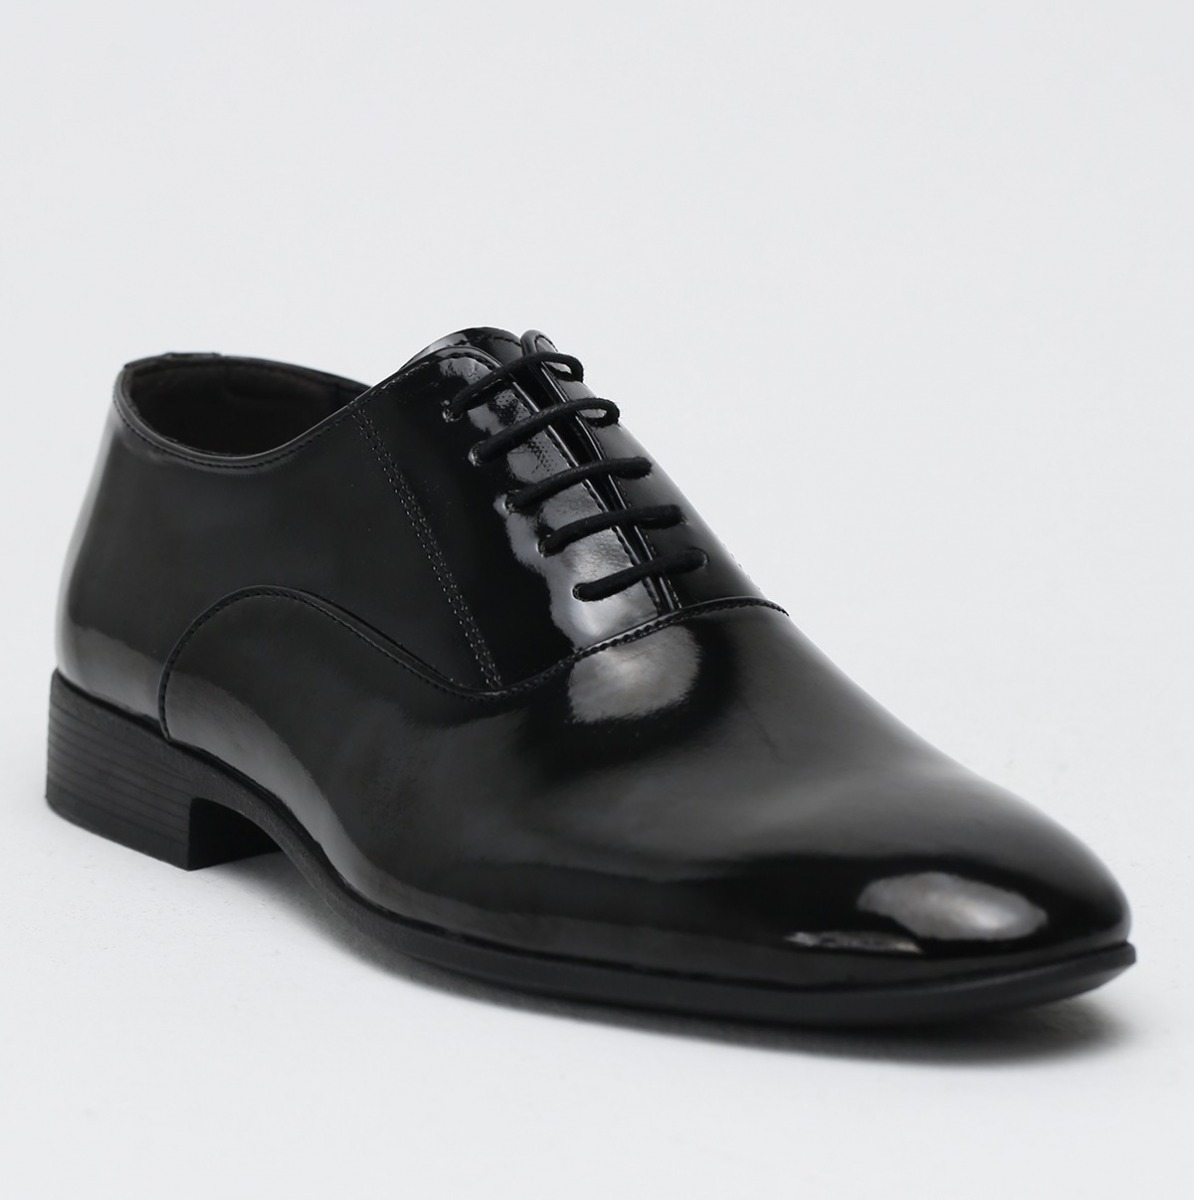 Flo Siyah Erkek Klasik Ayakkabı 1009-19-112014. 1